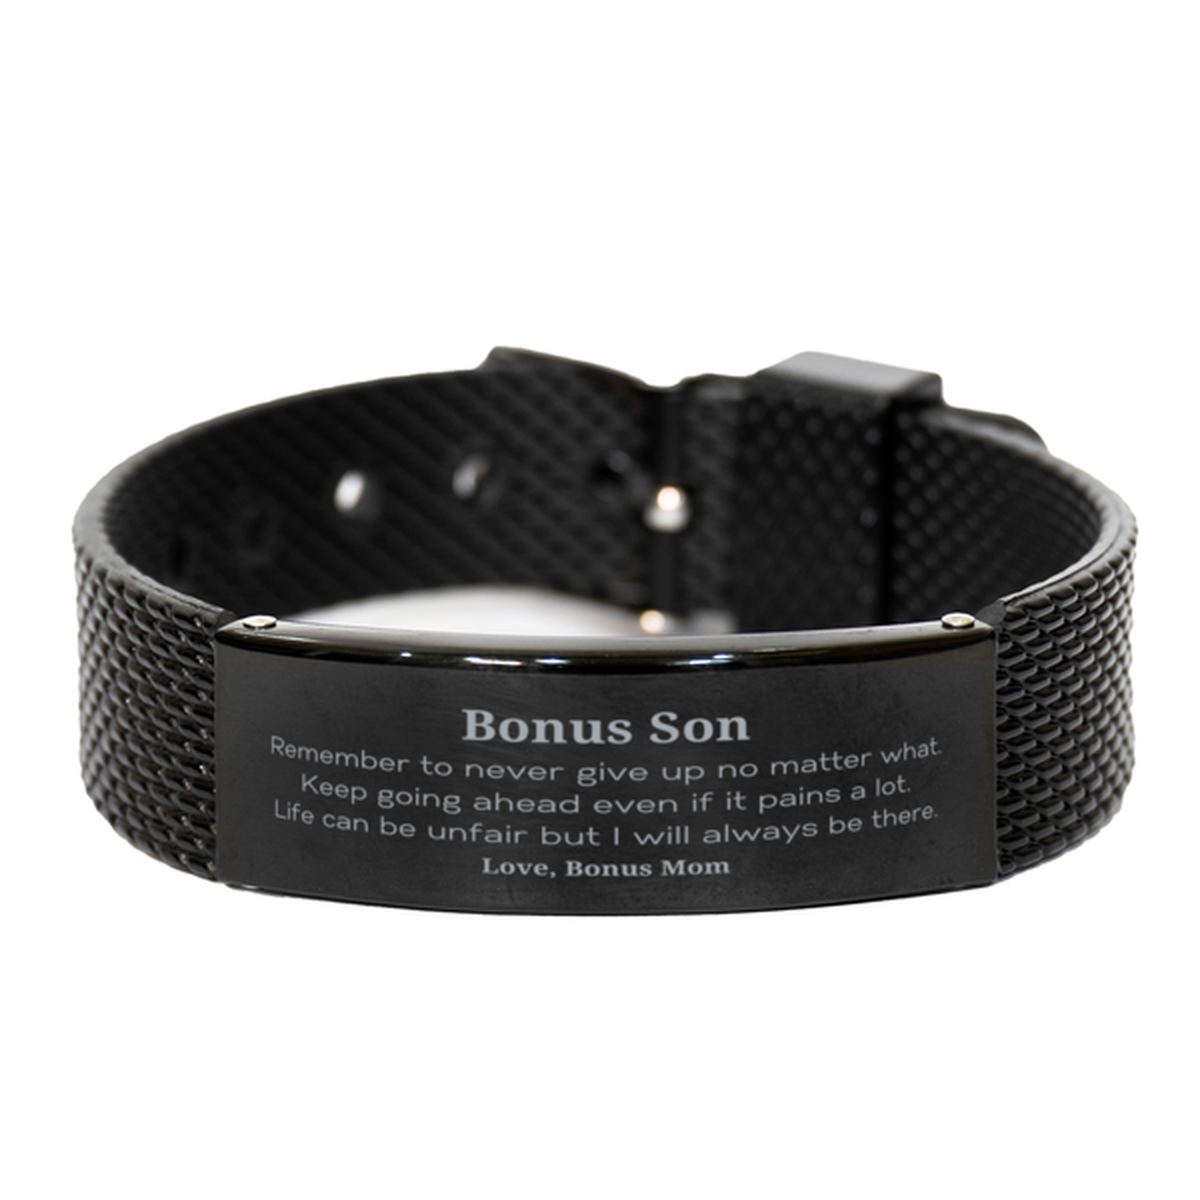 Bonus Son Motivational Gifts from Bonus Mom, Remember to never give up no matter what, Inspirational Birthday Black Shark Mesh Bracelet for Bonus Son